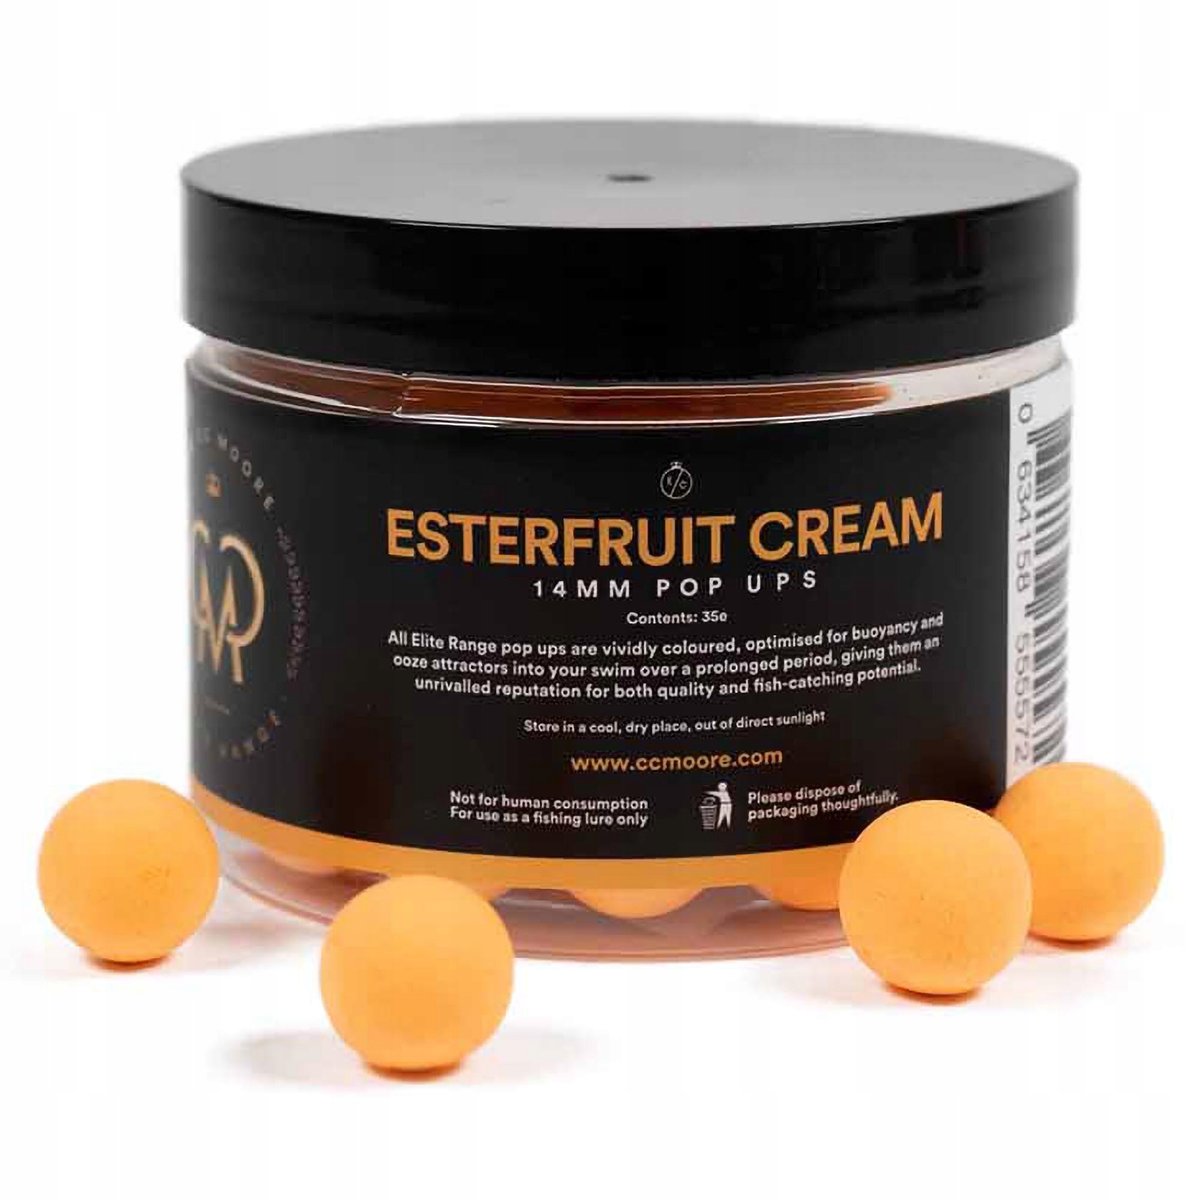 Фото - Приманка / наживка CC Moore Przynęta Kulki Pływające  Elite Range Pop Up Esterfruit Cream 14 M 